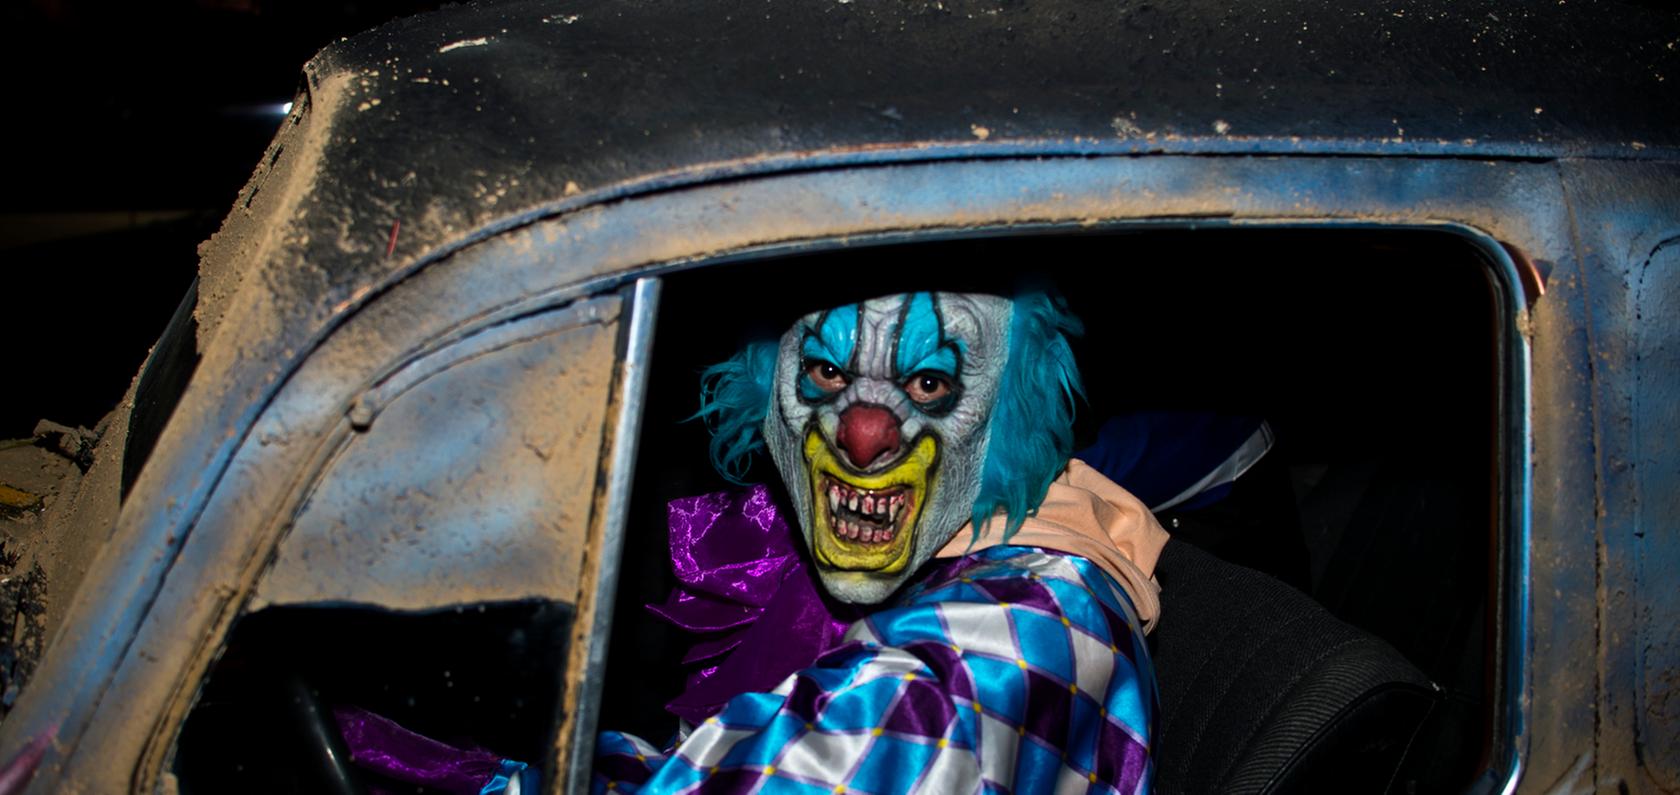 Immer mehr Menschen verkleiden sich als Clown und verbreiten dann Angst und Schrecken. Die Polizei warnt: Dieser schlechte Scherz kann strafrechtliche Konsequenzen haben.